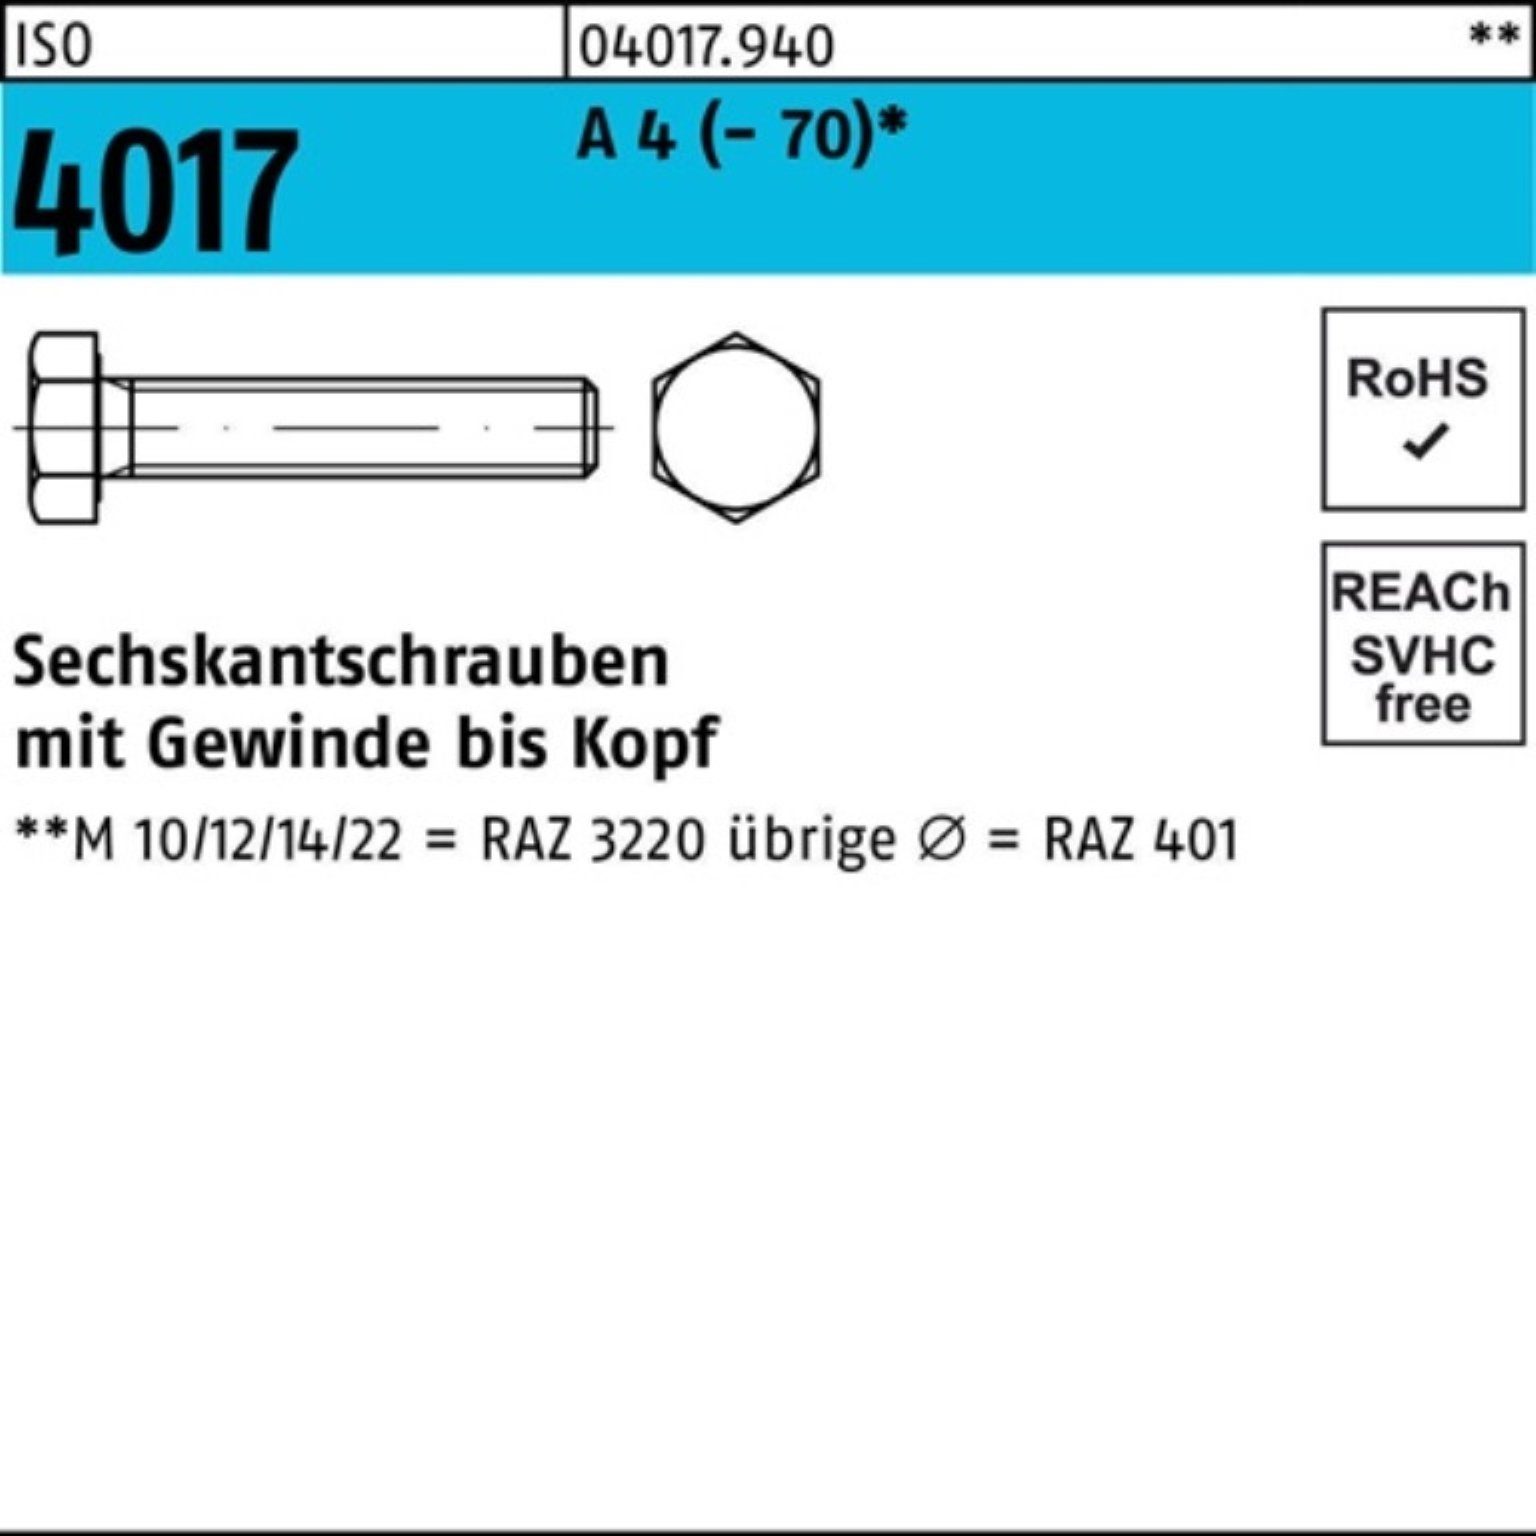 Bufab Sechskantschraube 100er M12x Pack (70) 4017 Stück Sechskantschraube A 150 4 1 VG ISO